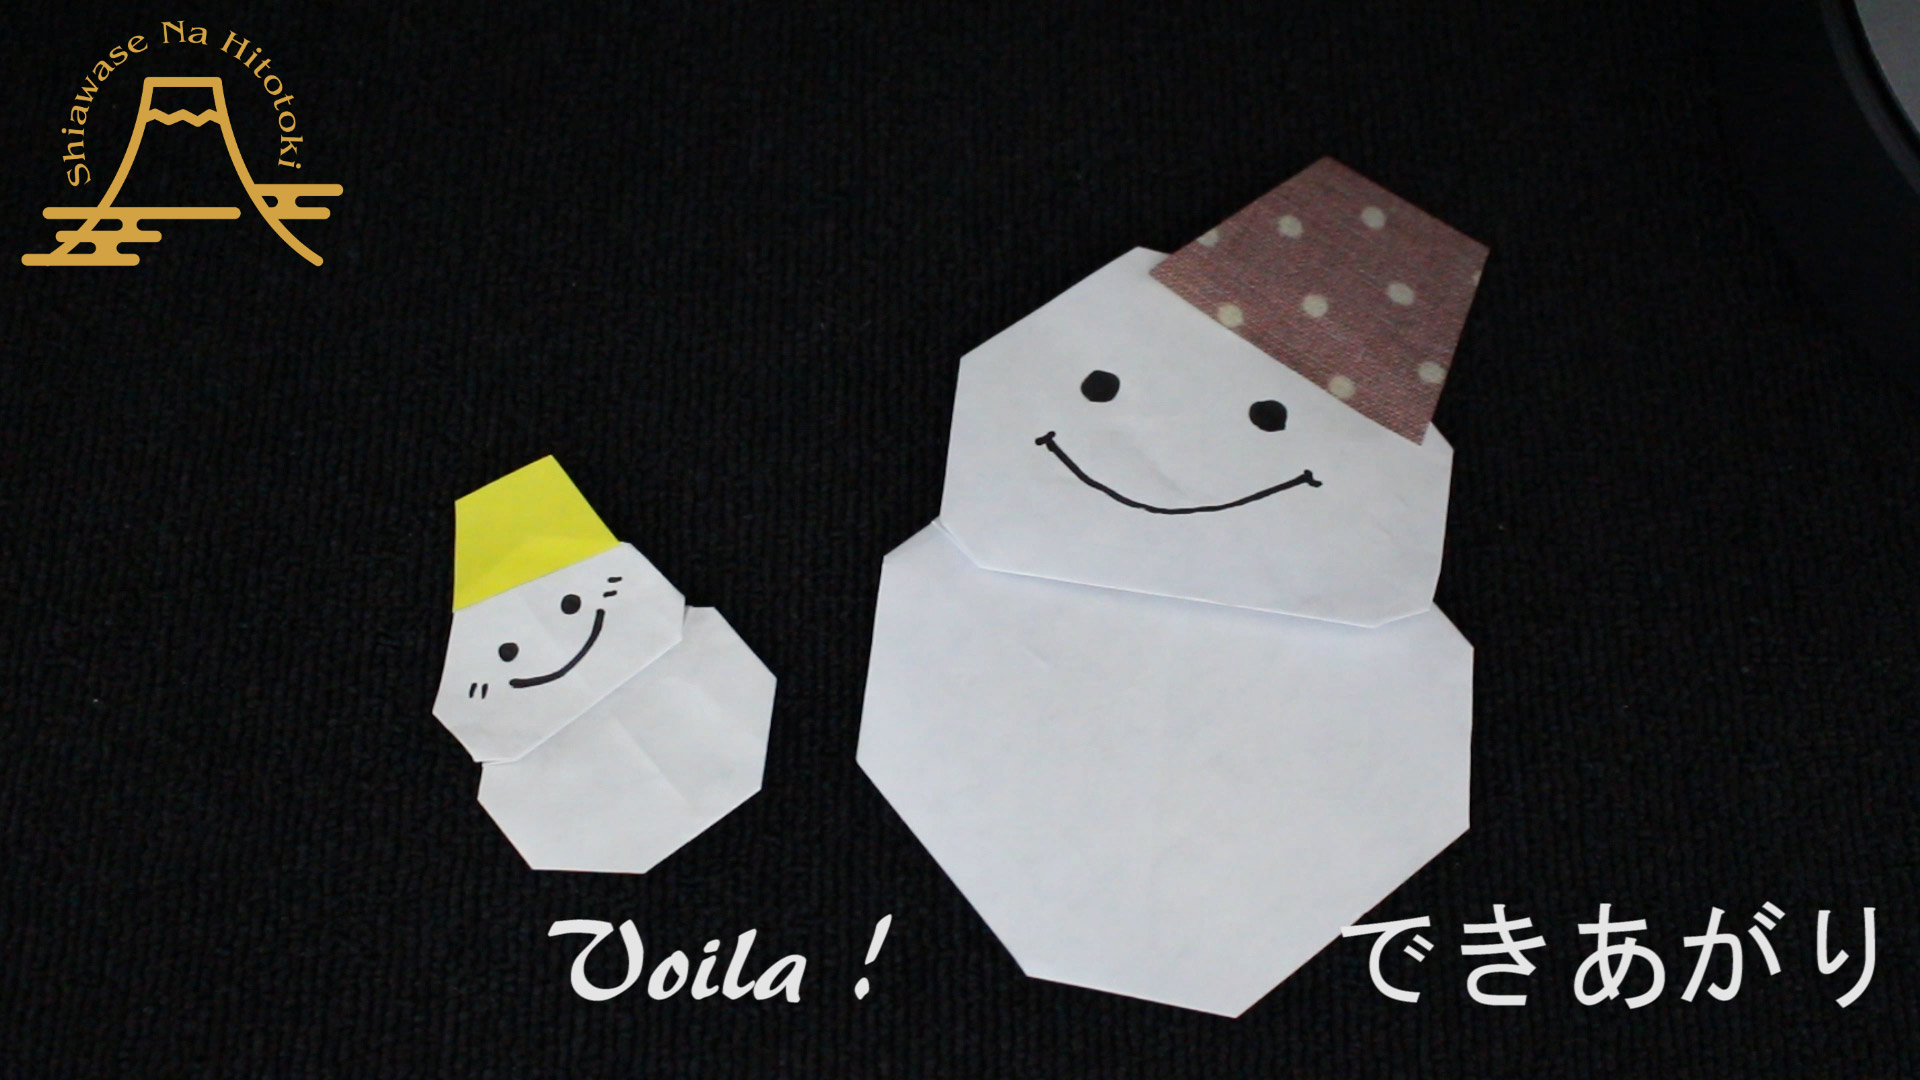 簡単 折り紙 雪だるまの折り方 冬の折り紙の手番 折り紙の折り方 幸せなひと時